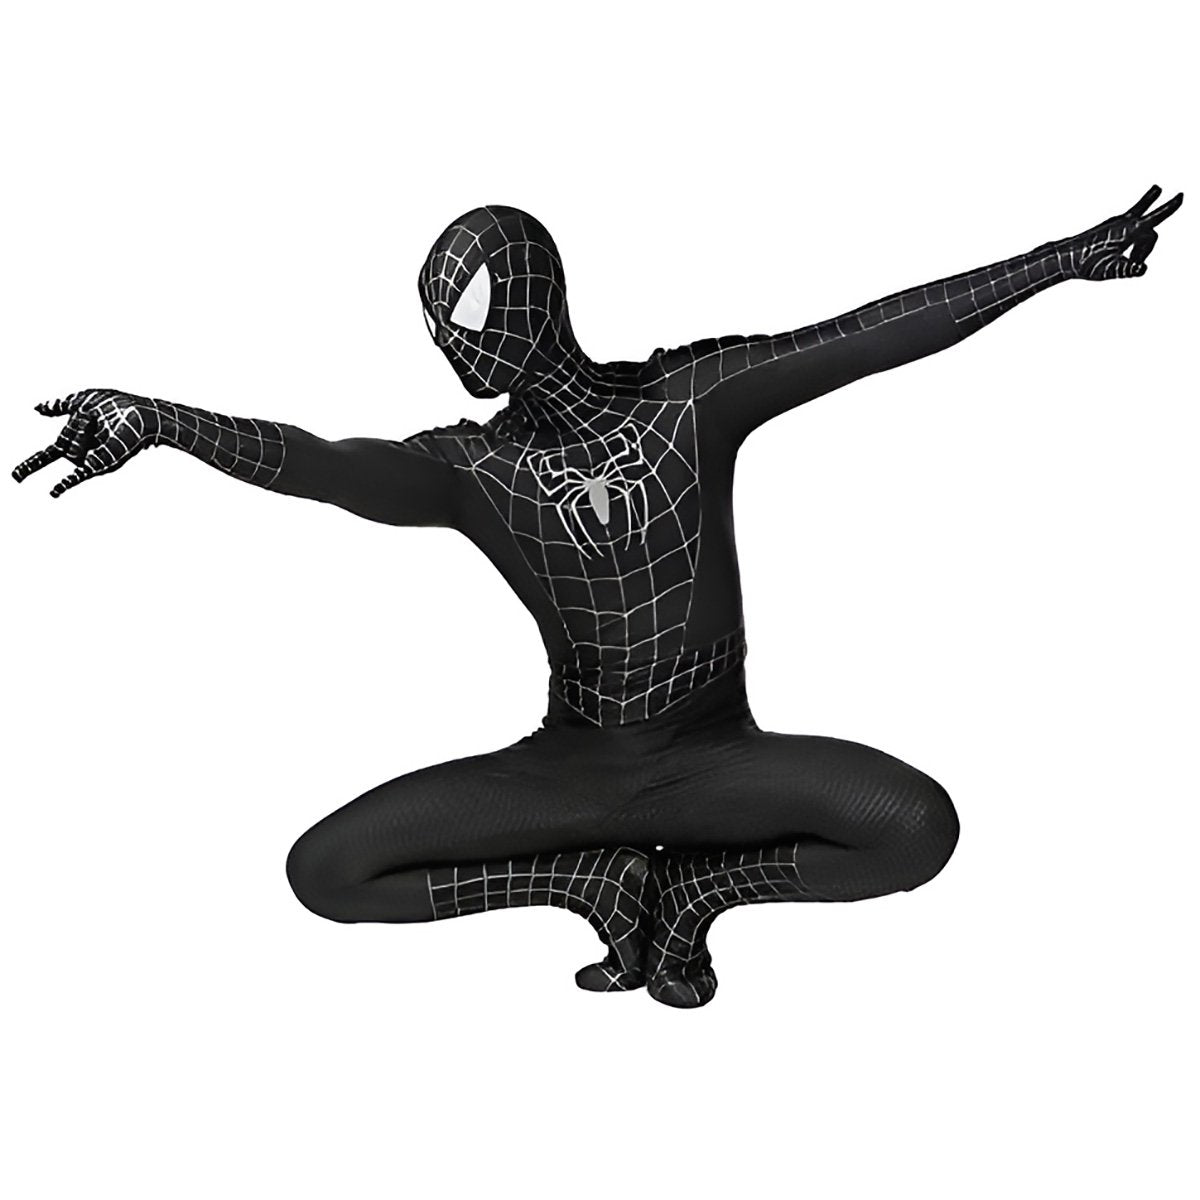 Stealth Spider Warrior Costume